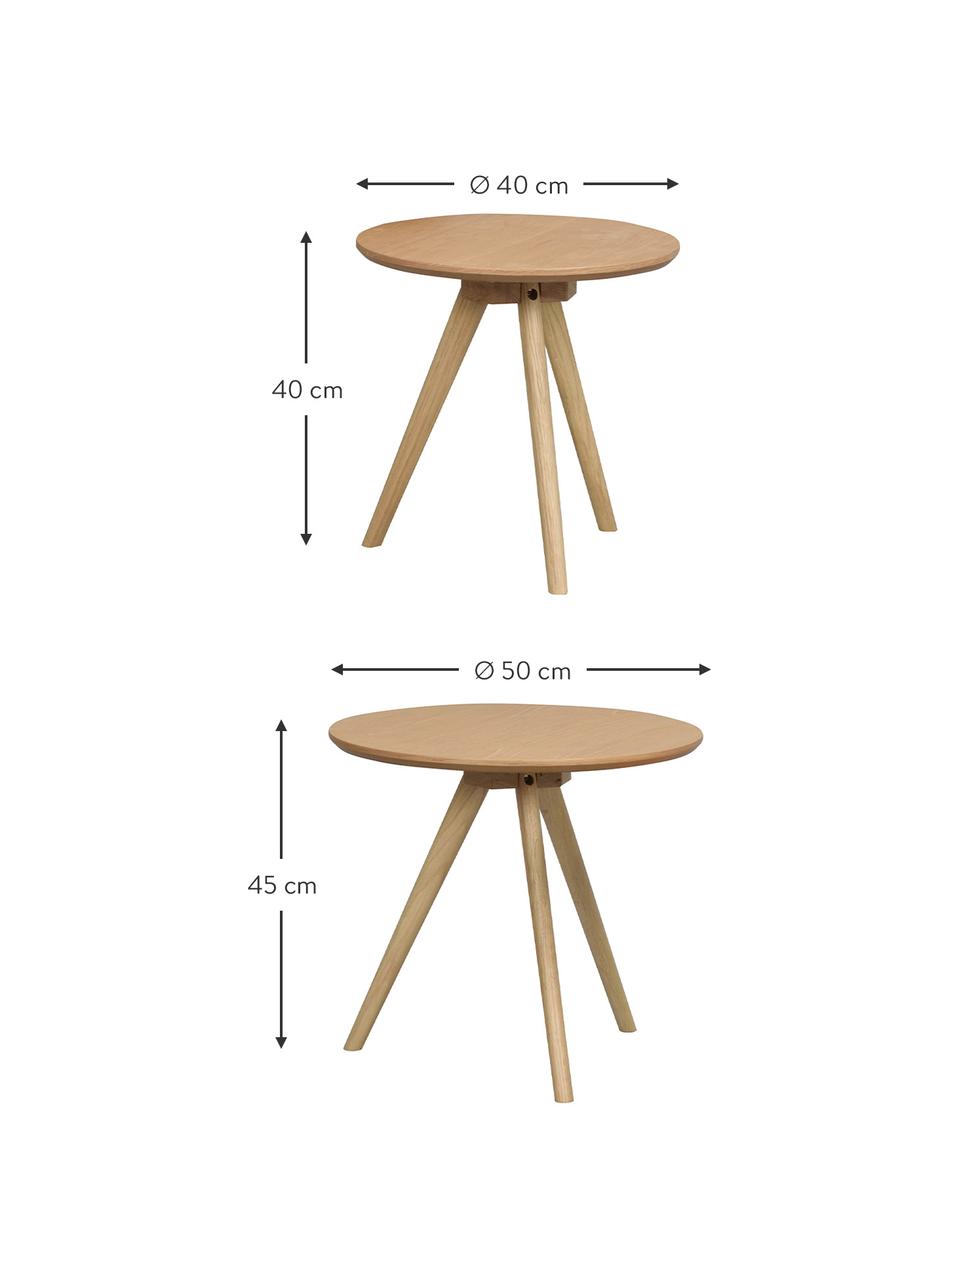 Beistelltisch-Set Yumi in Hellbraun, 2-tlg., Tischplatte: Mitteldichte Holzfaserpla, Beine: Eichenholz, massiv, Hellbraun, Set mit verschiedenen Größen